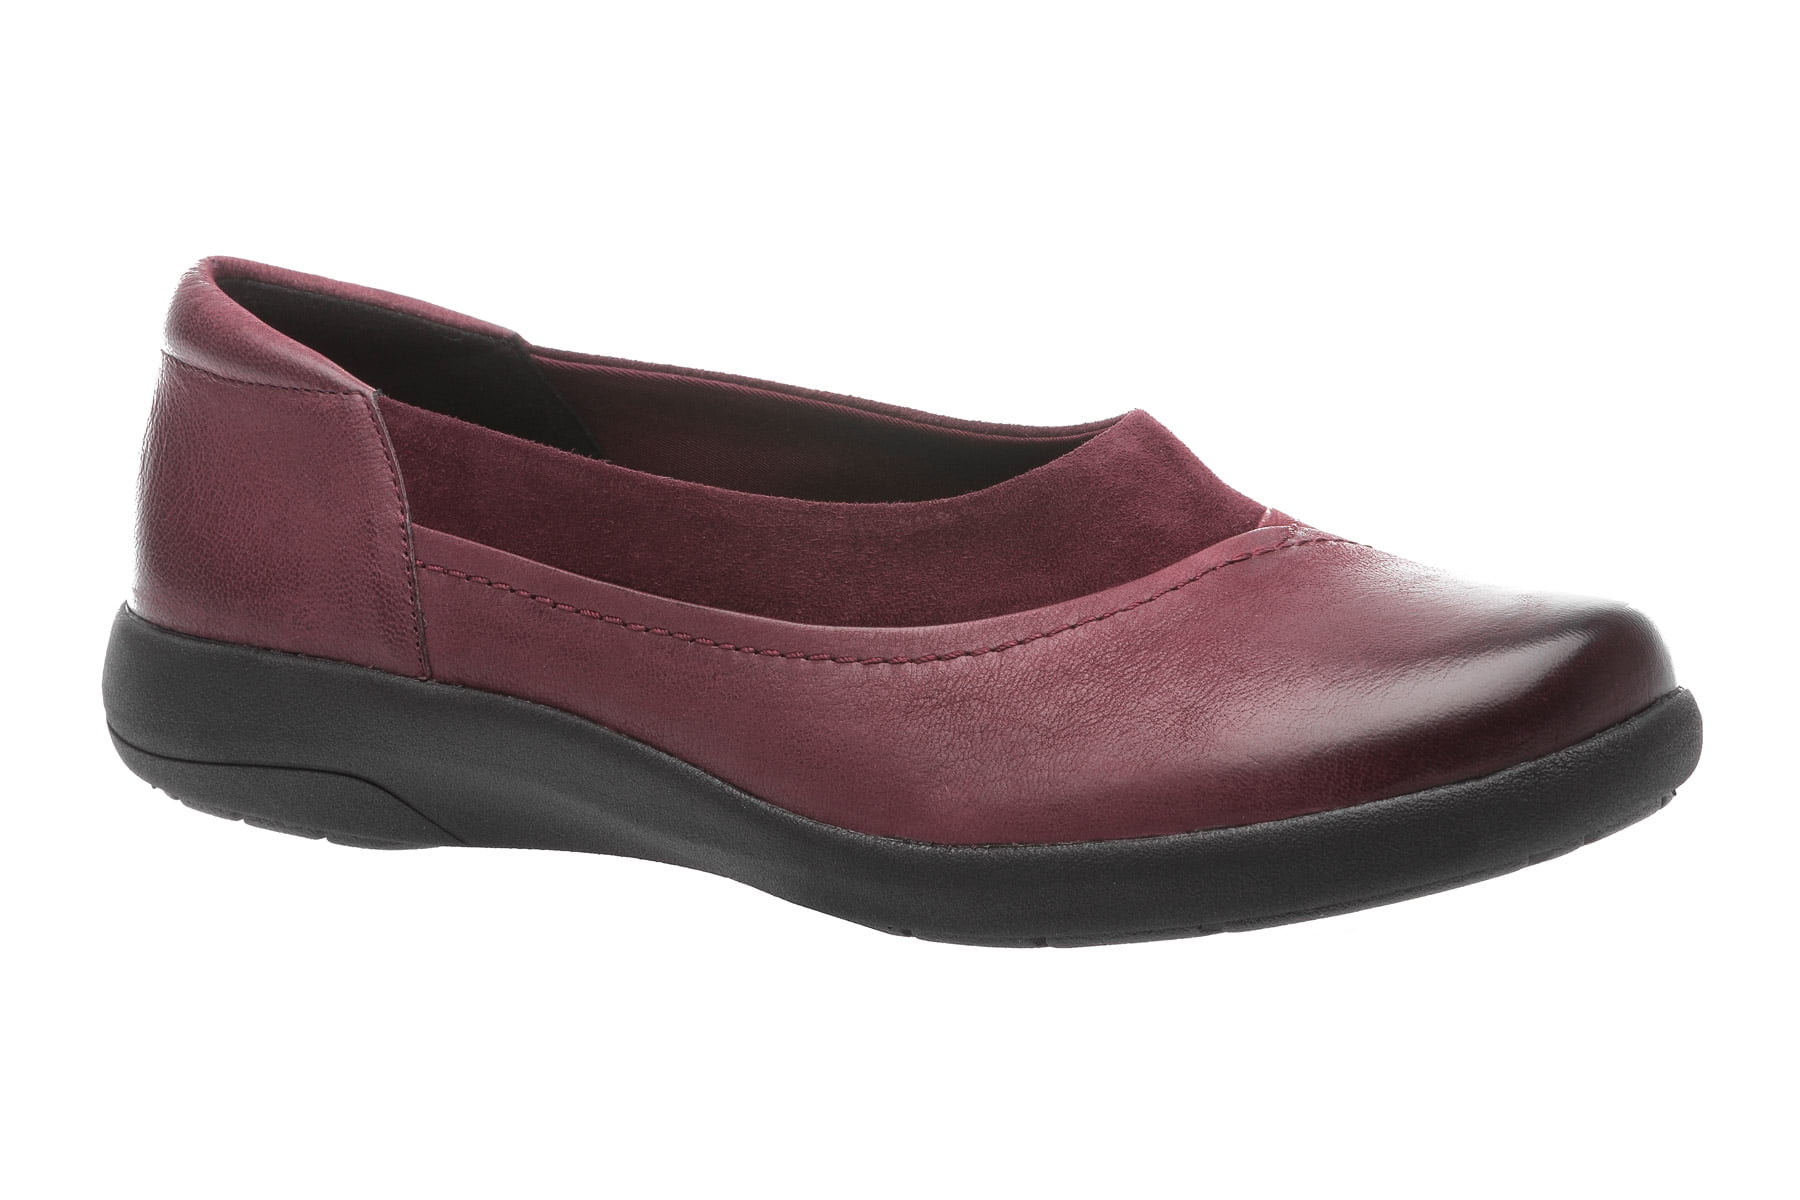 ABEO Footwear - ABEO Women's Etta - Casual Shoes - Walmart.com ...